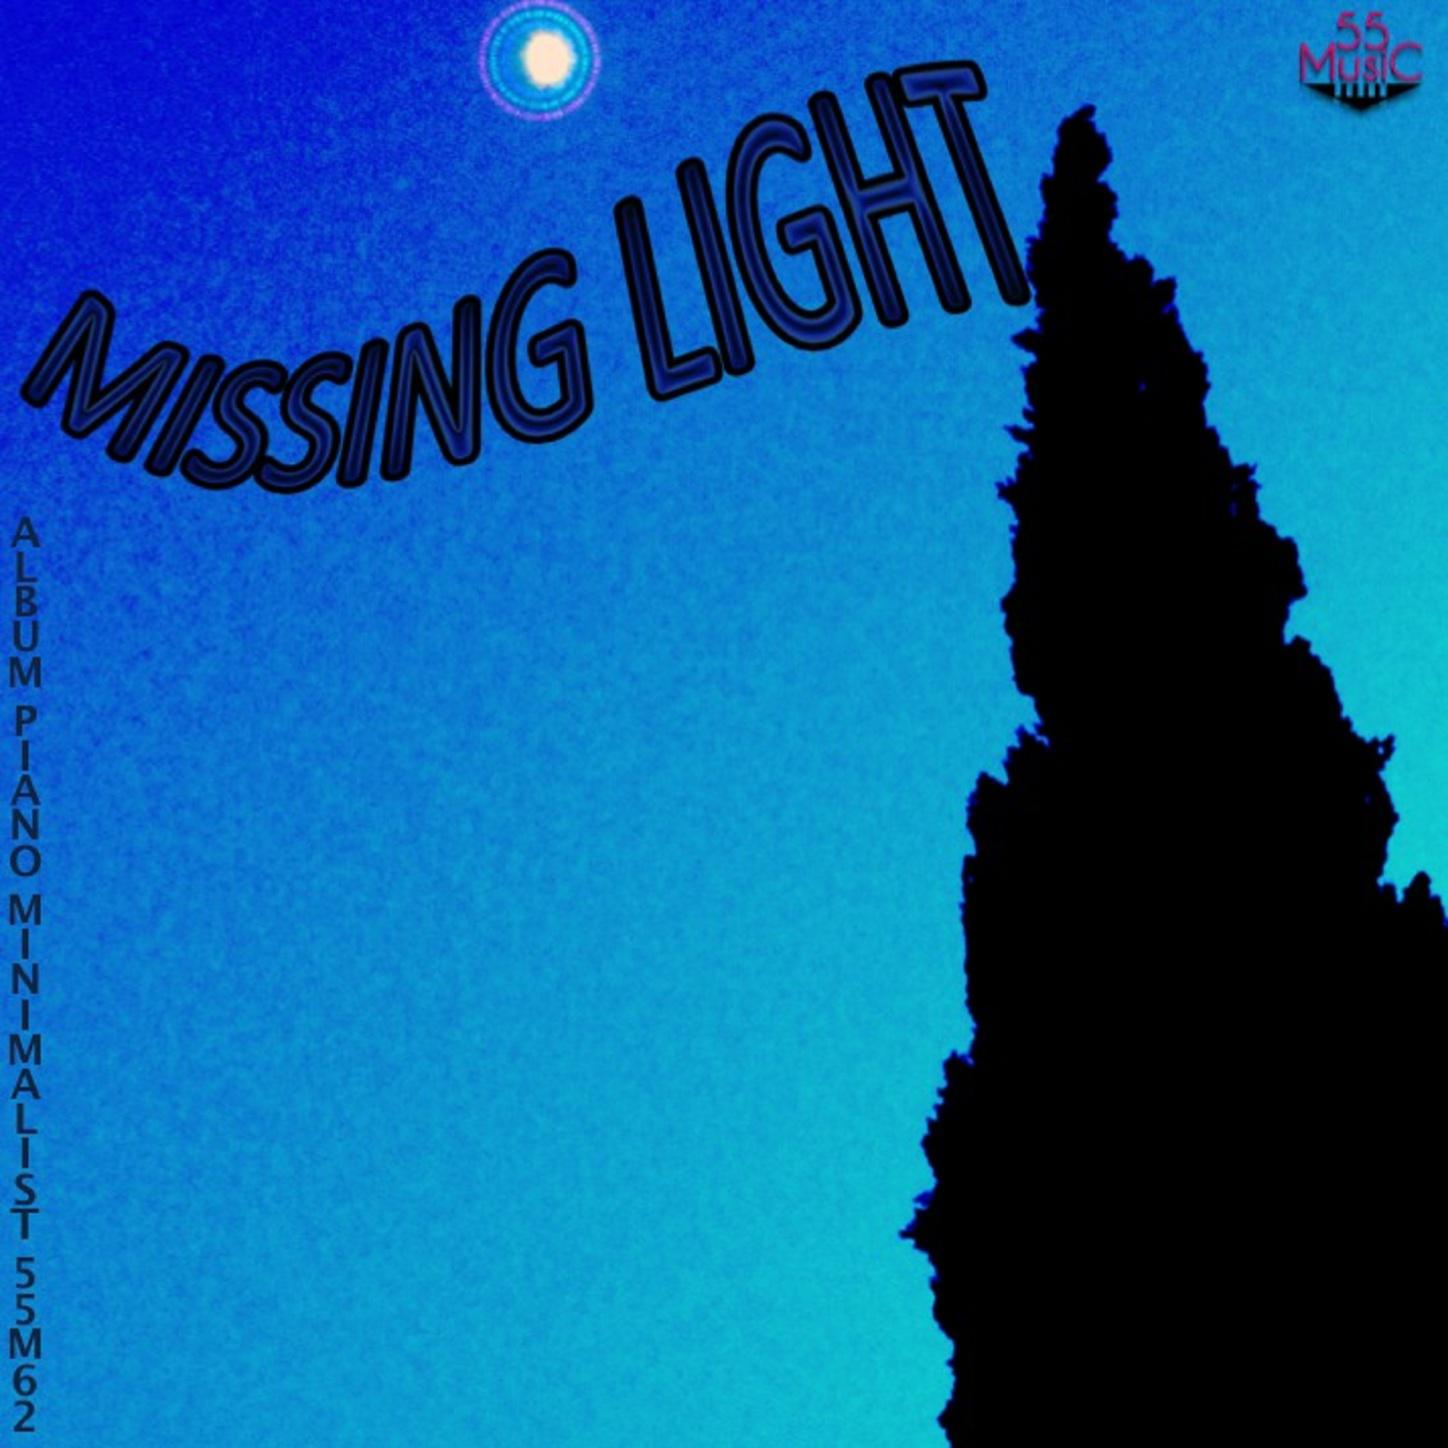 Missing Light